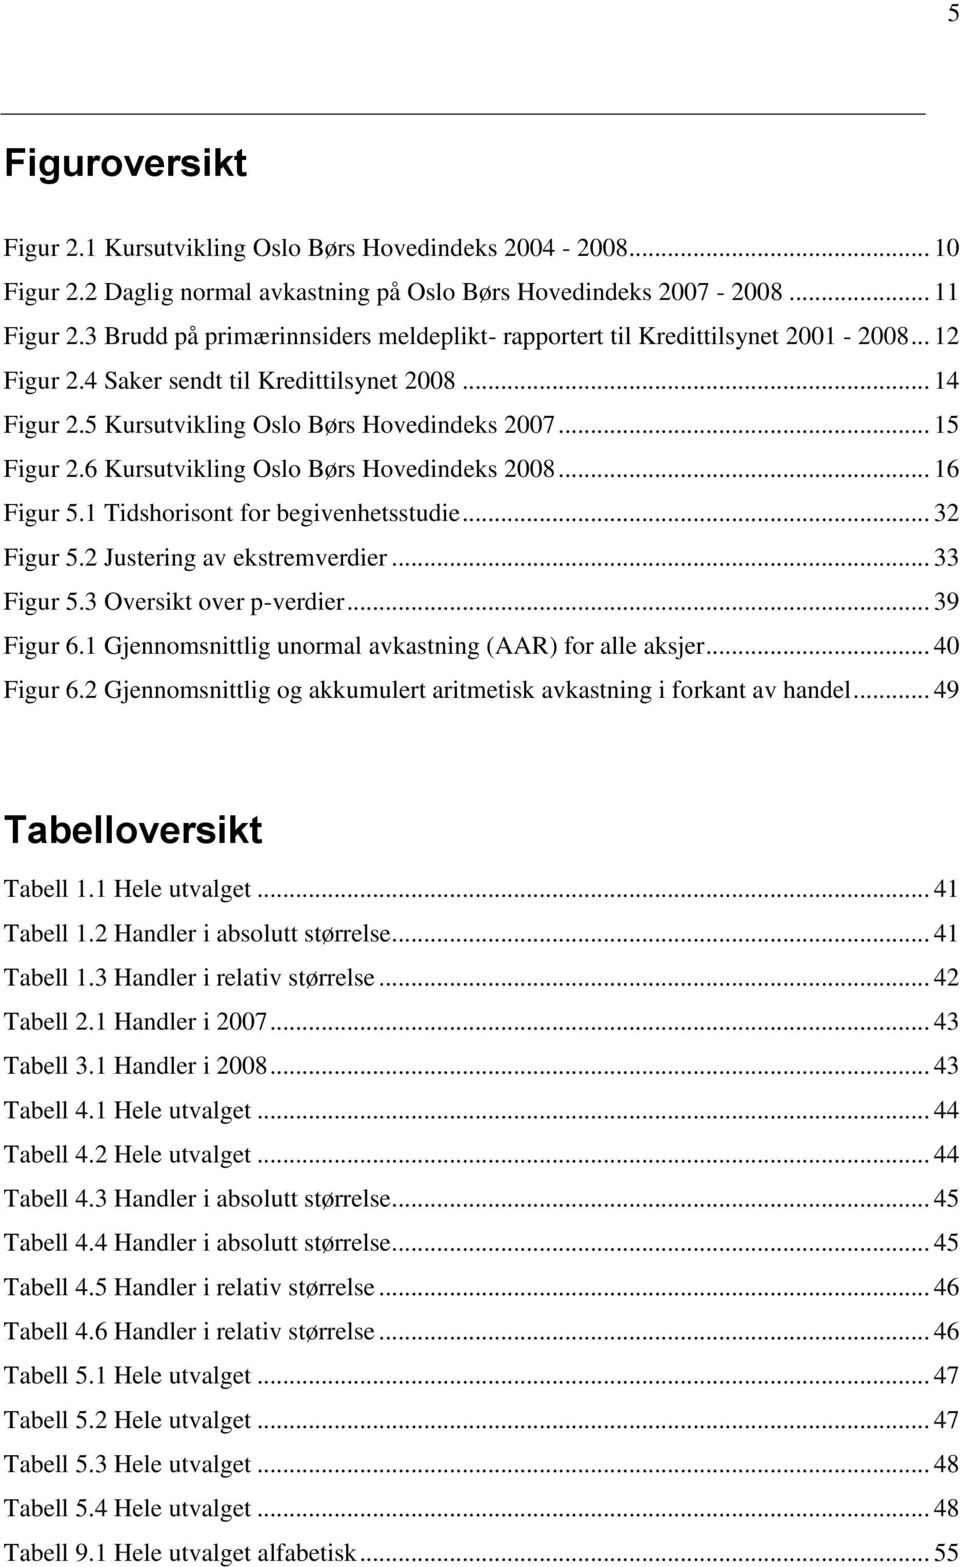 6 Kursutvikling Oslo Børs Hovedindeks 2008... 16 Figur 5.1 Tidshorisont for begivenhetsstudie... 32 Figur 5.2 Justering av ekstremverdier... 33 Figur 5.3 Oversikt over p-verdier... 39 Figur 6.